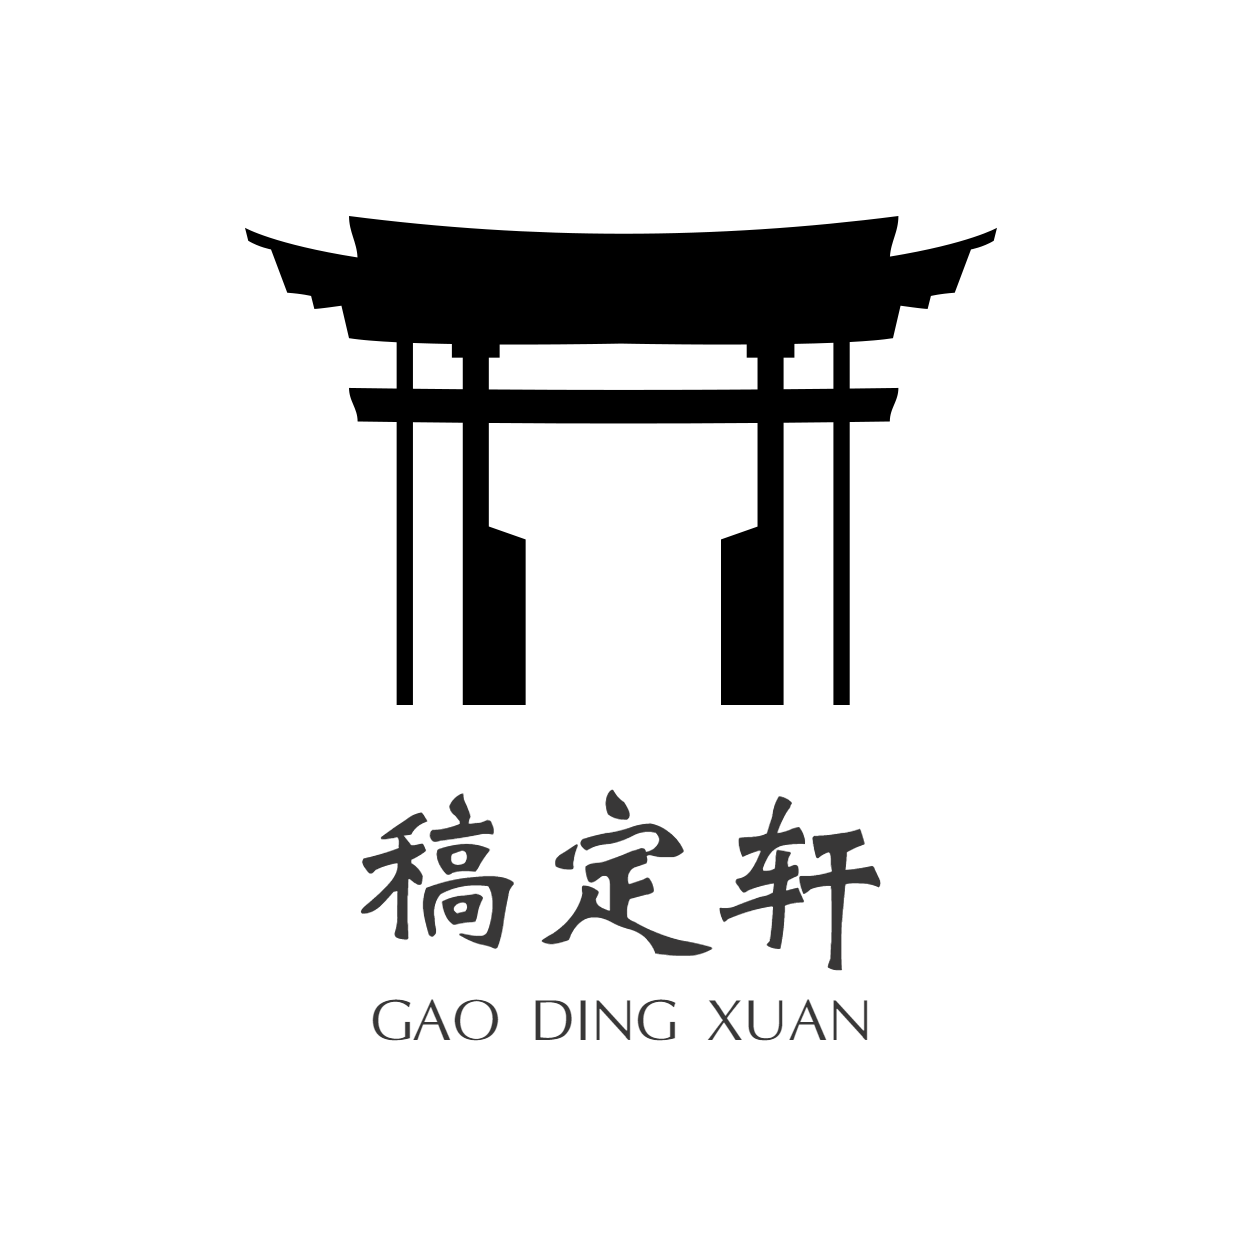 中国风创意头像Logo